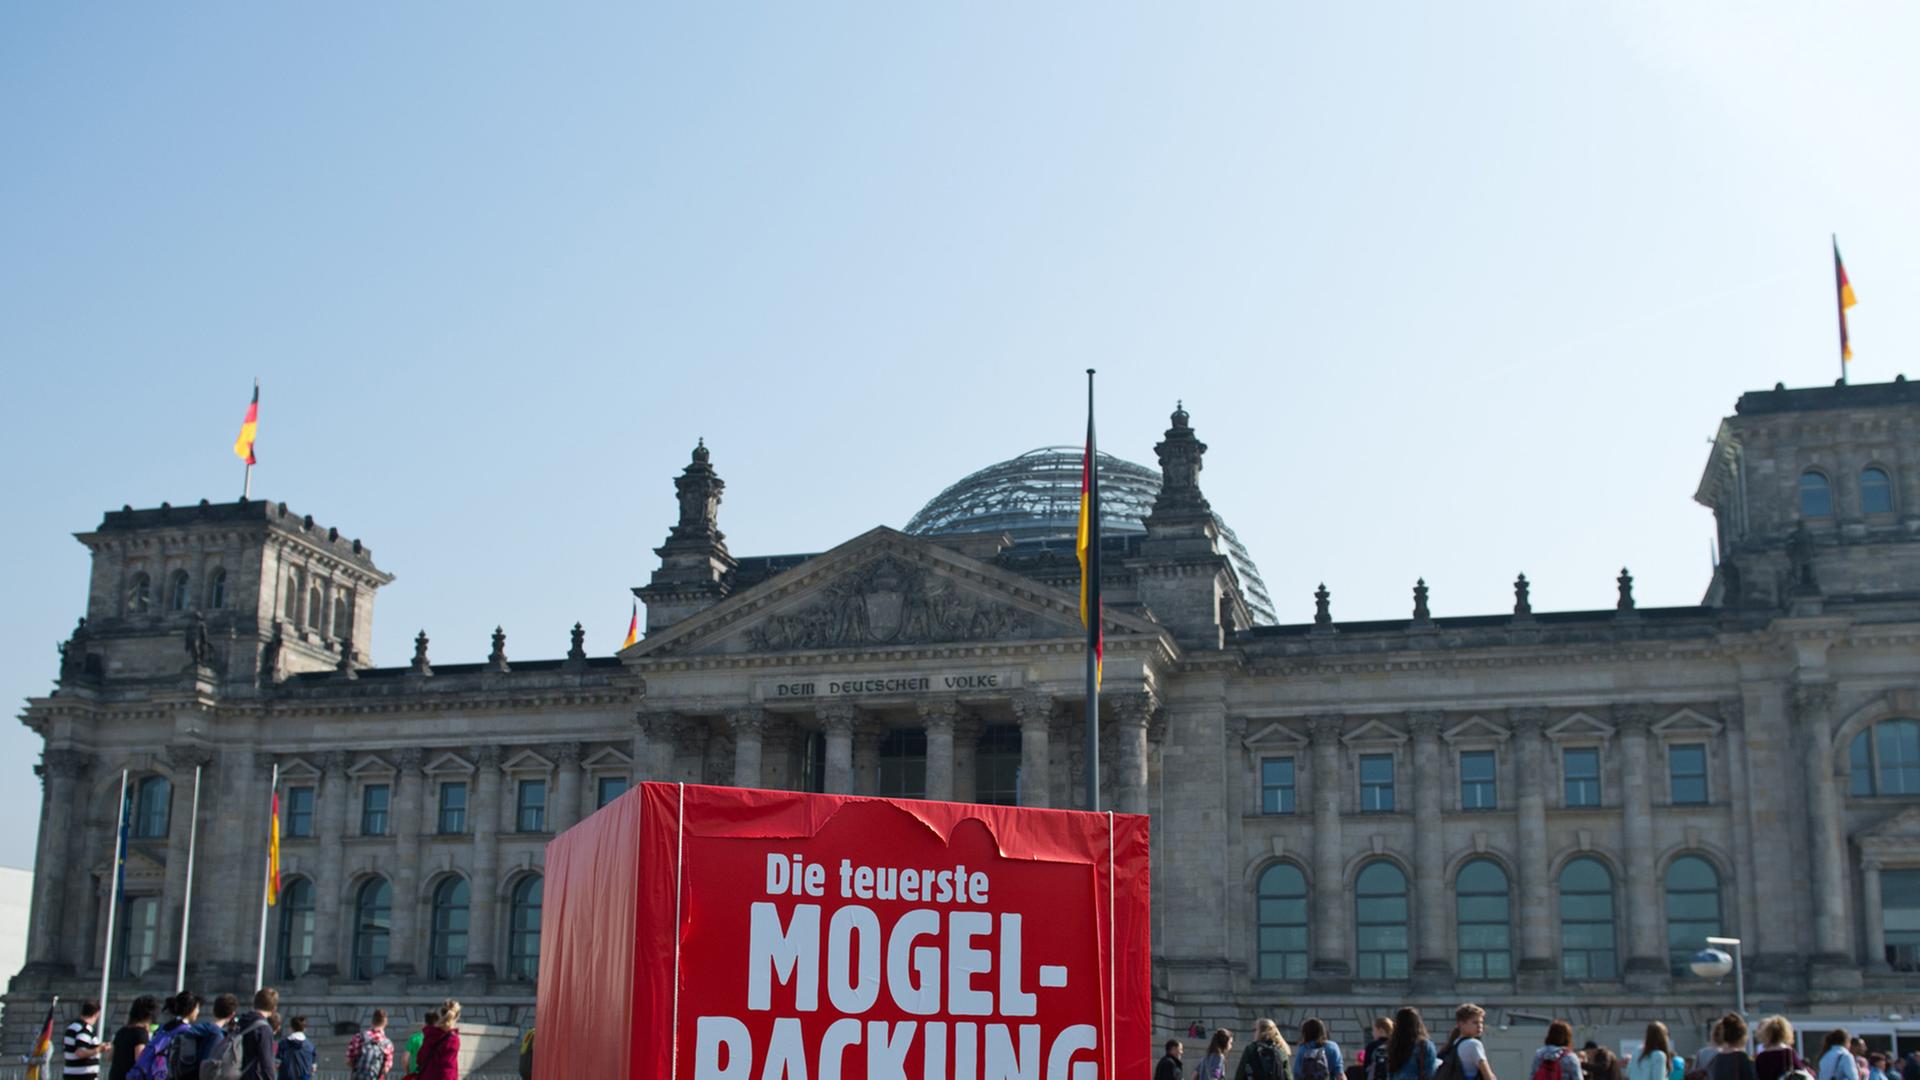 Ein rotes Riesen-Paket als Protest der Partei Bündnis 90/Die Grünen mit der Aufschrift "Die teuerste Mogelpackung aller Zeiten" steht vor dem Reichstagsgebäude in Berlin.